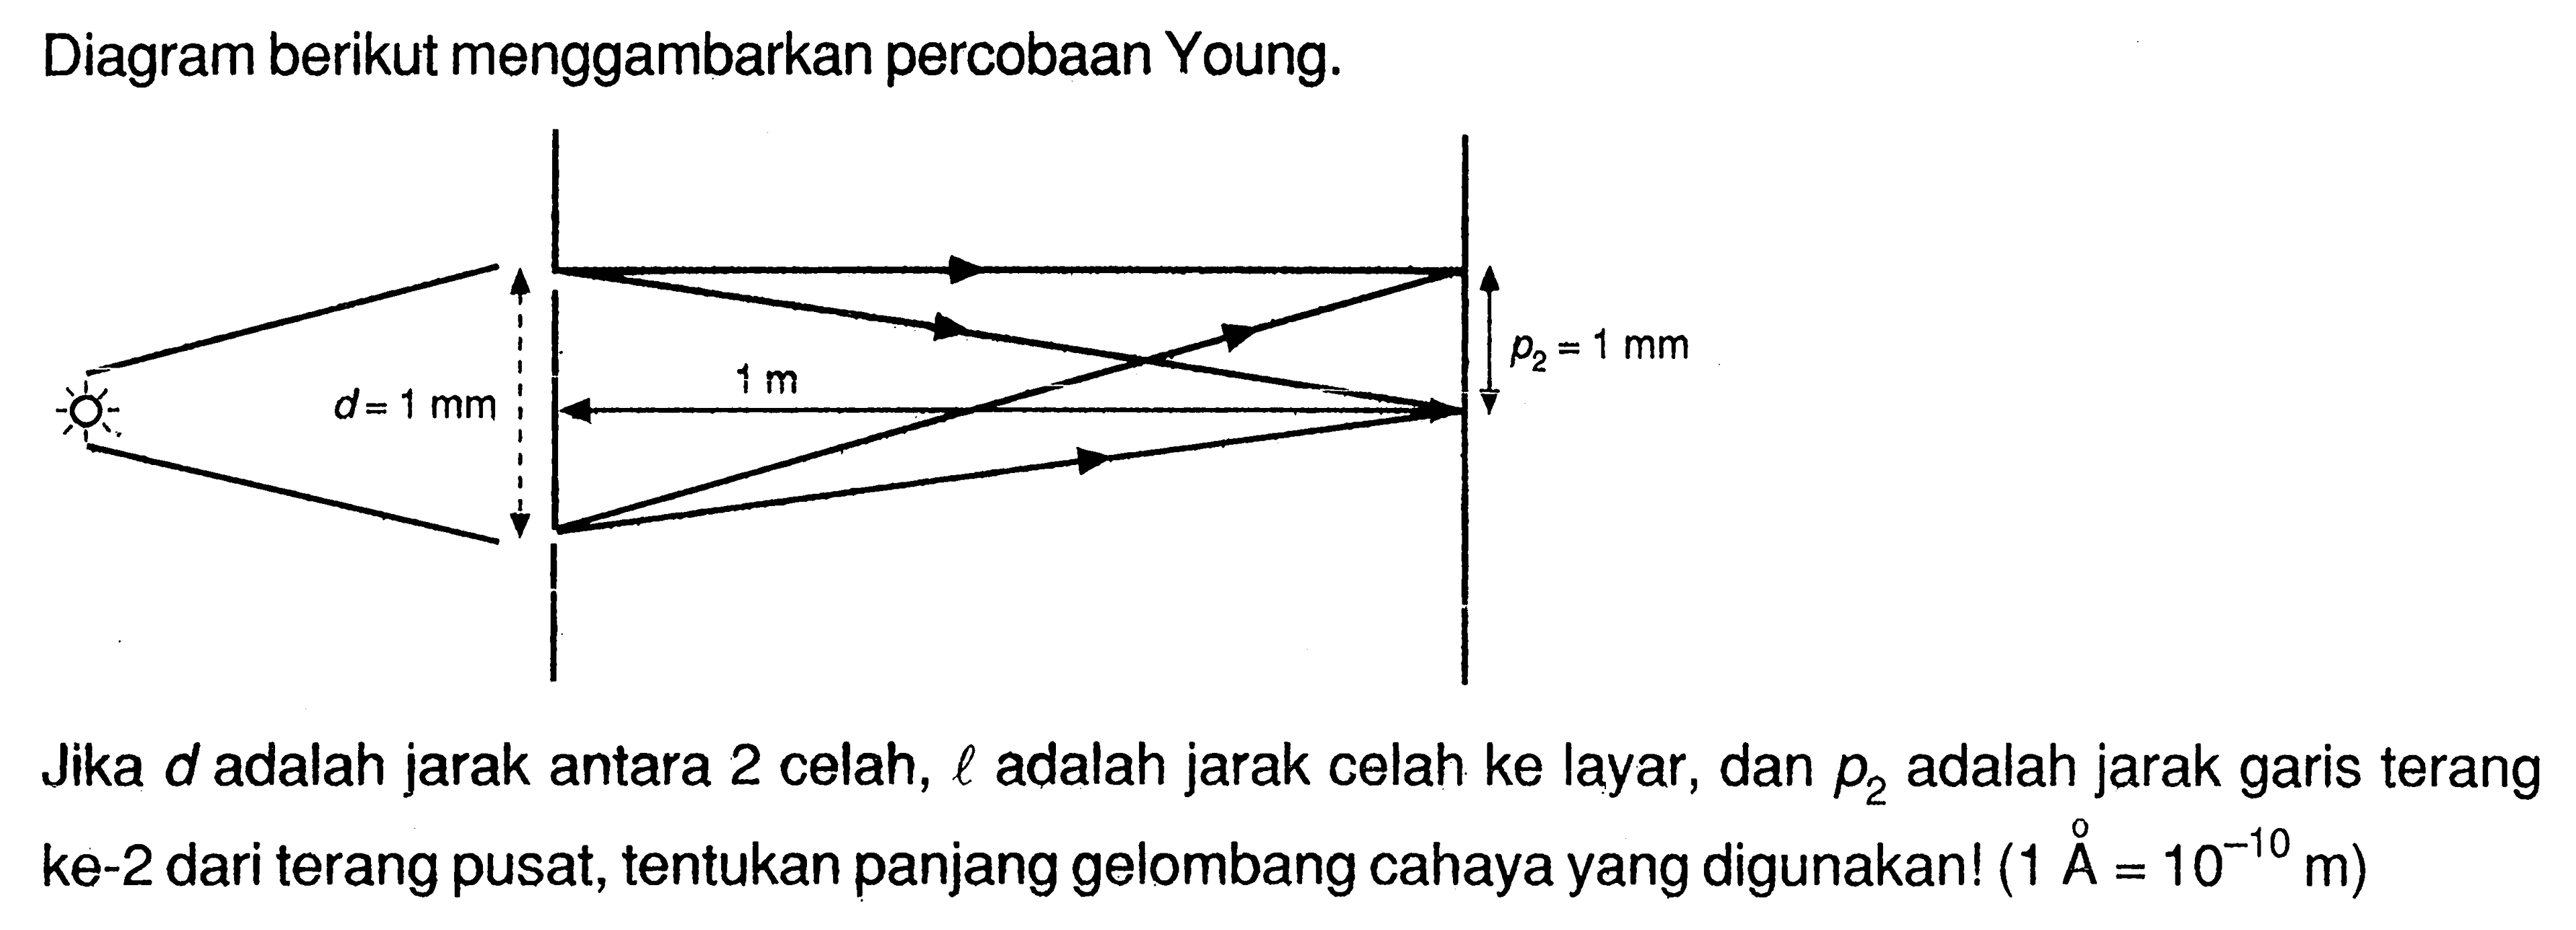 Diagram berikut menggambarkan percobaan Young.Jika  d  adalah jarak antara 2 celah,  l  adalah jarak celah ke layar, dan  p_(2)  adalah jarak garis terang ke-2 dari terang pusat, tentukan panjang gelombang cahaya yang digunakan!  (1 \AA=10^(-10) m) 